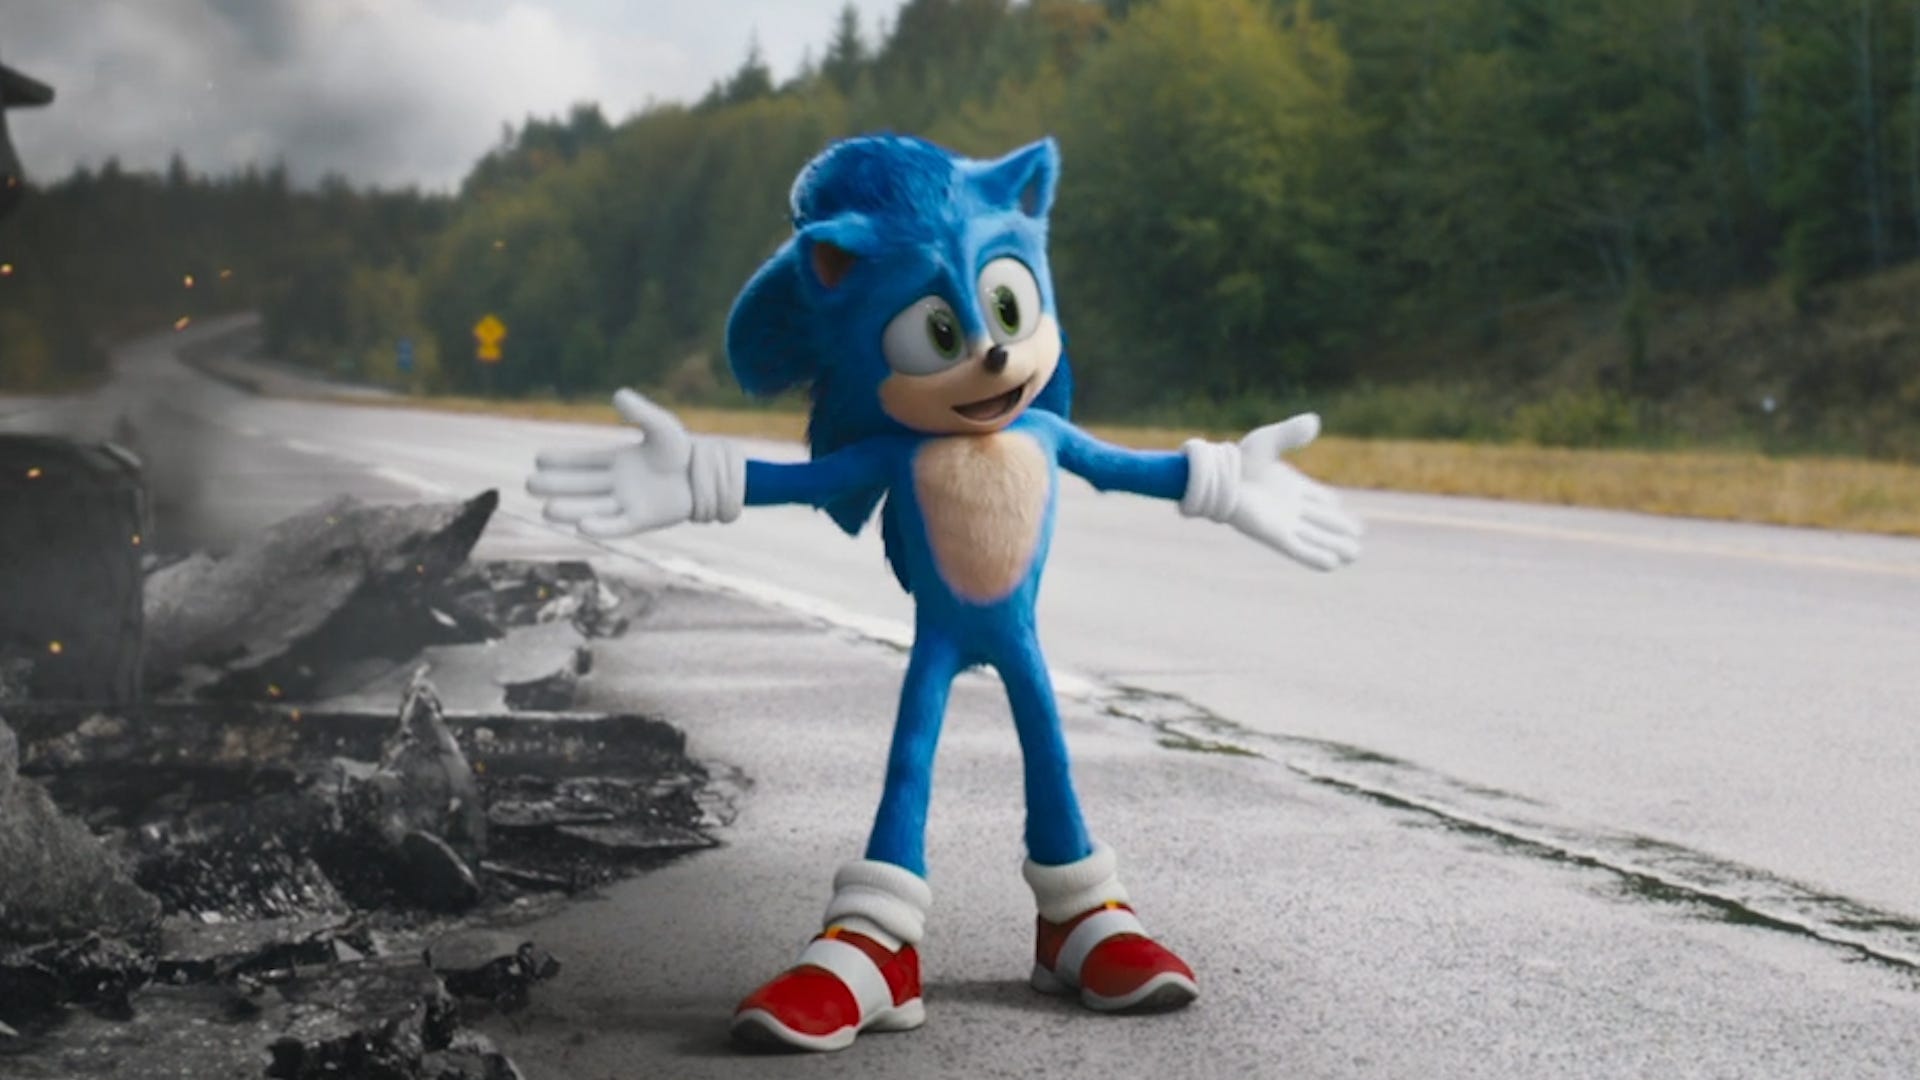 Sonic filmi gişede rekor kırdı: Beklenmedik başarı